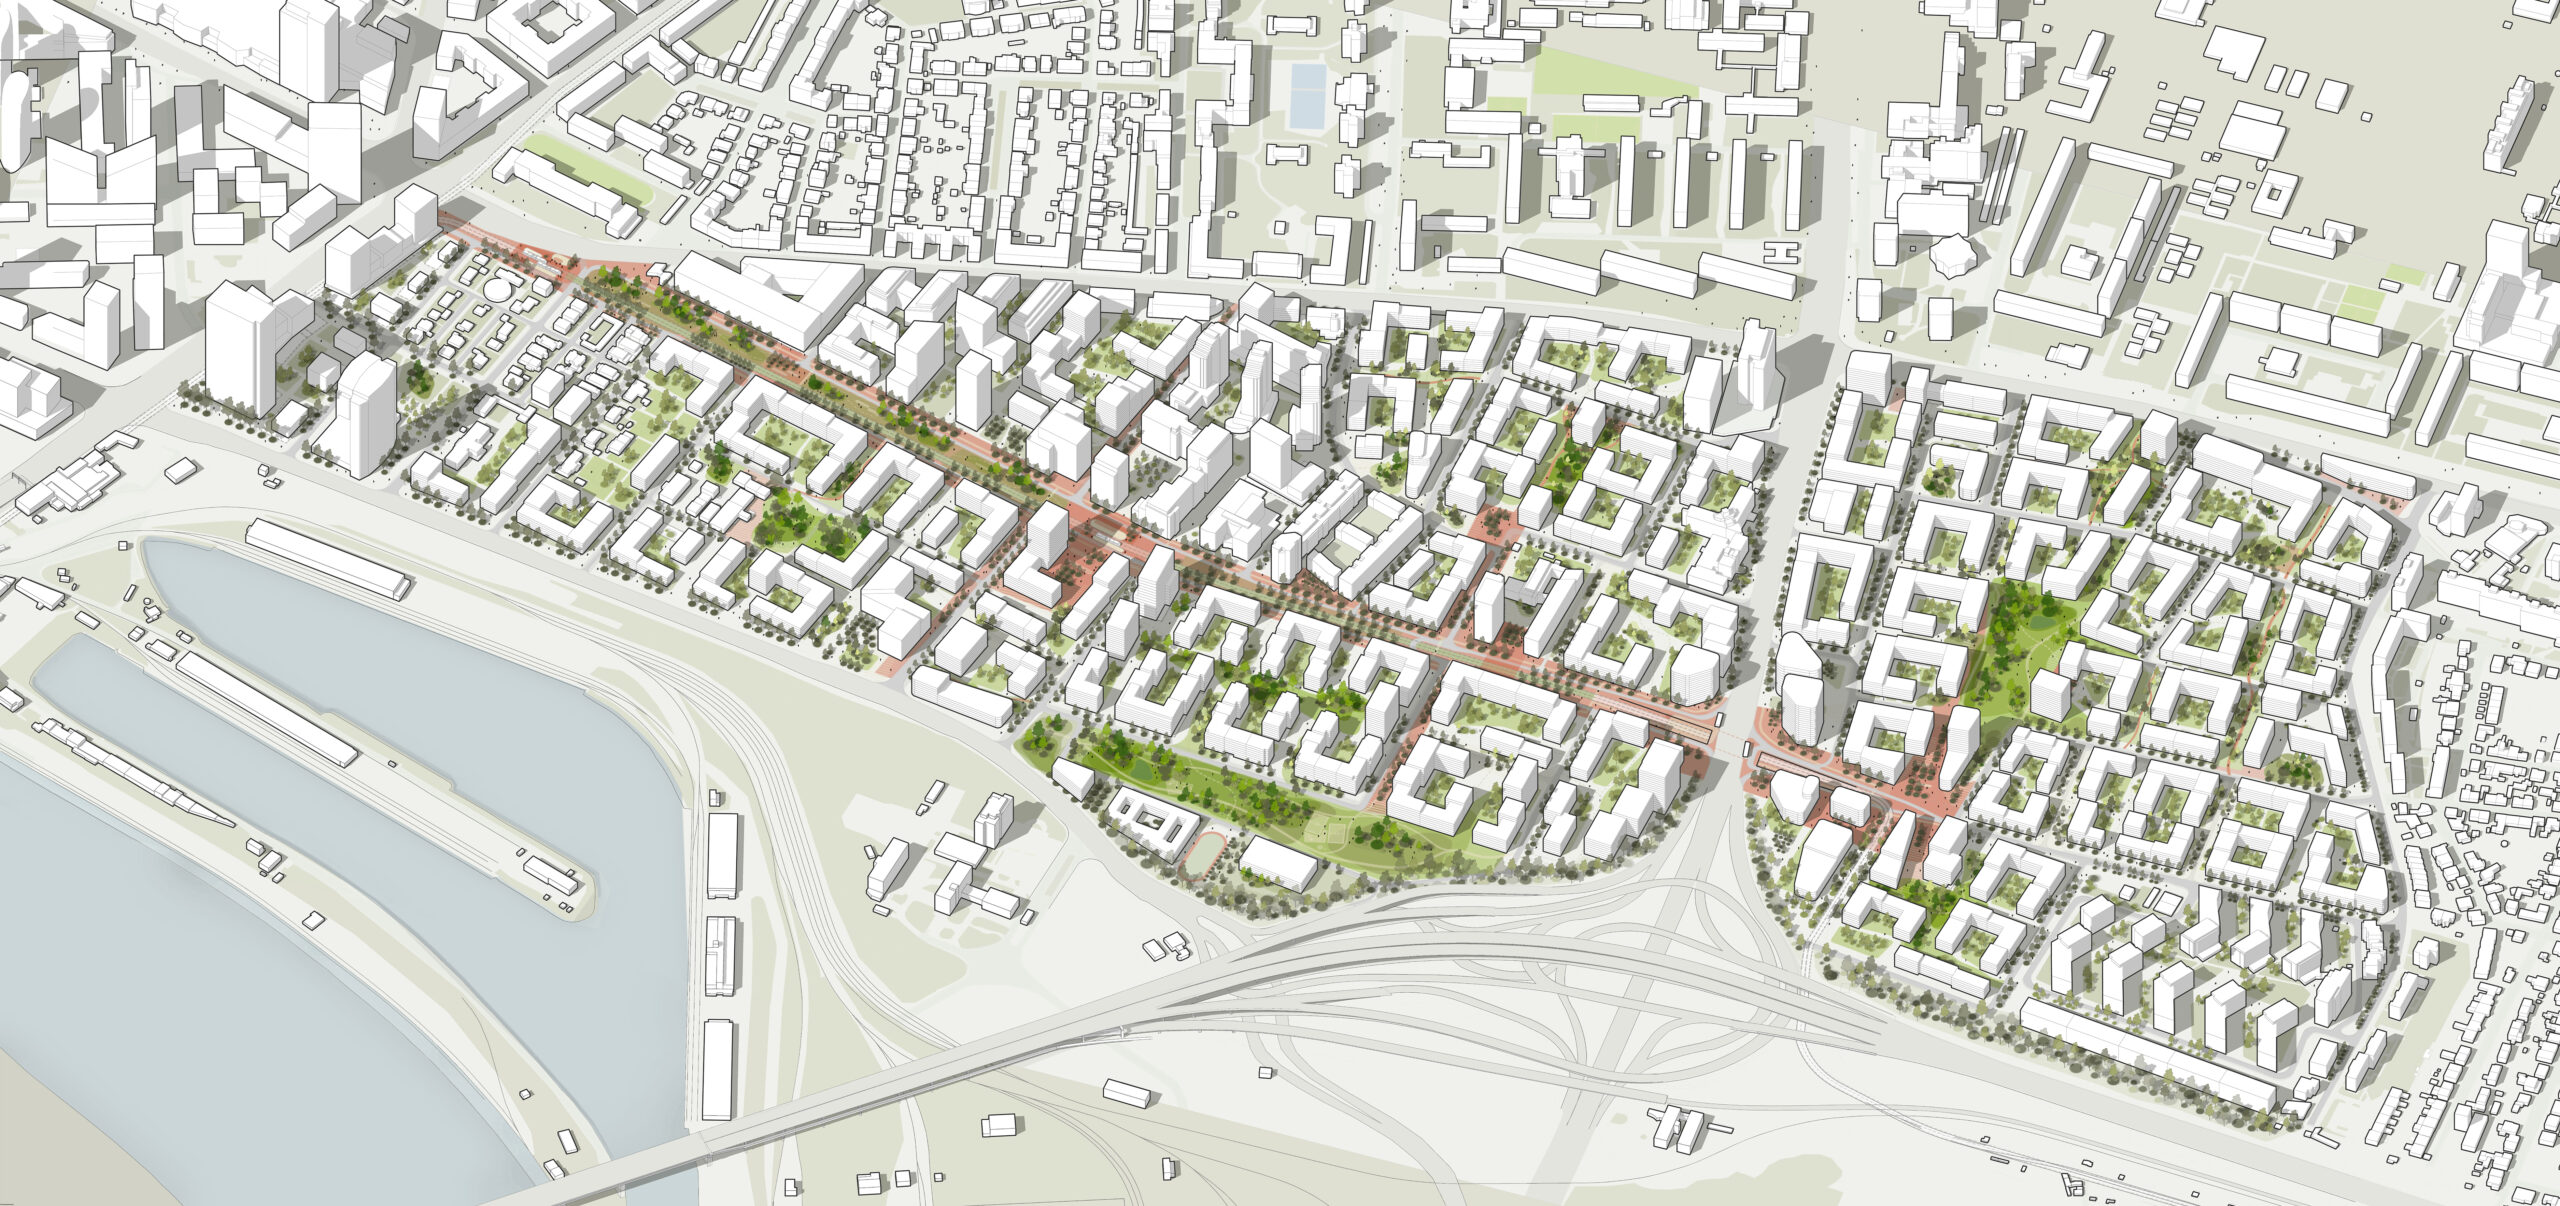 Návrh novej urbanistickej štúdie MIB-u predstavuje prototyp citlivého vytvárania mestských štvrtí